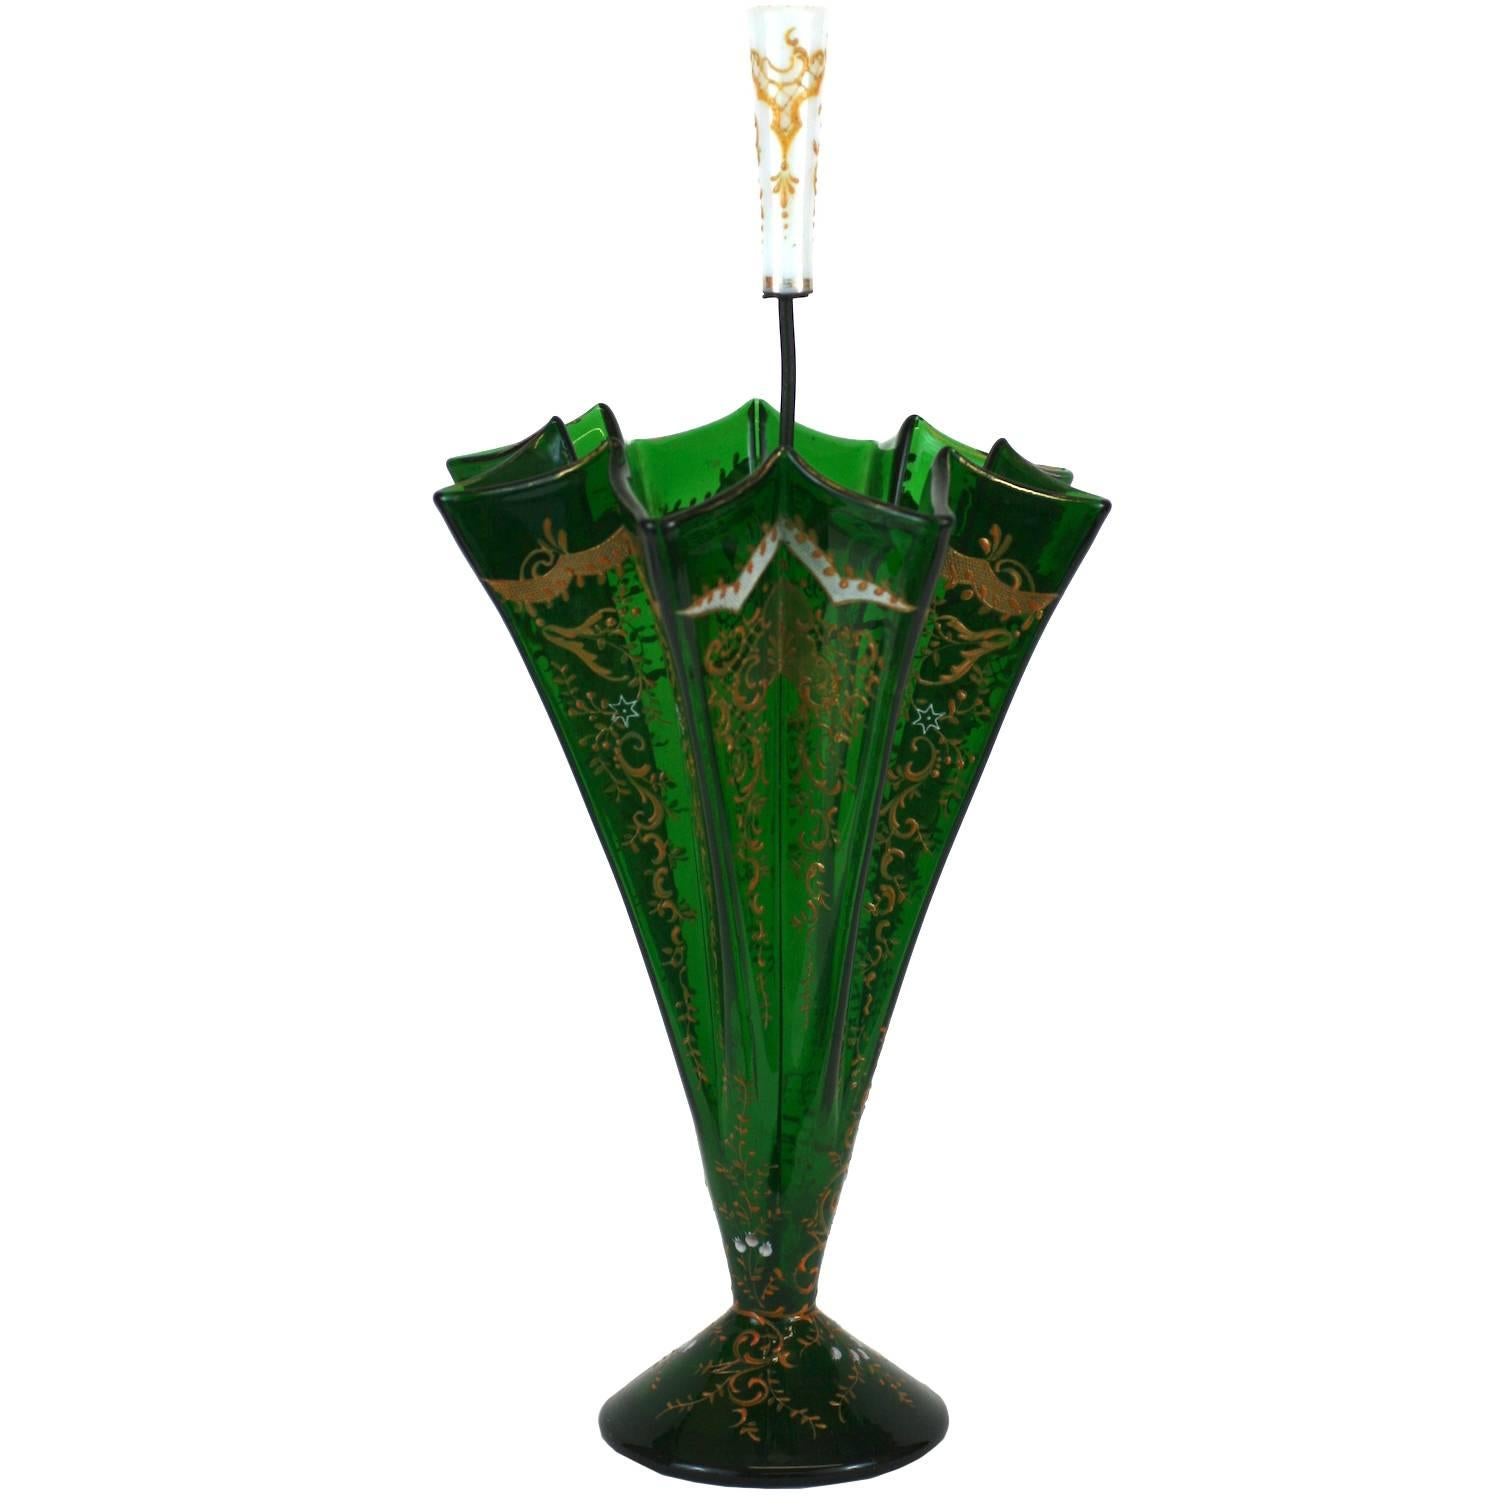 Charming Victorian Figural Umbrella Vase